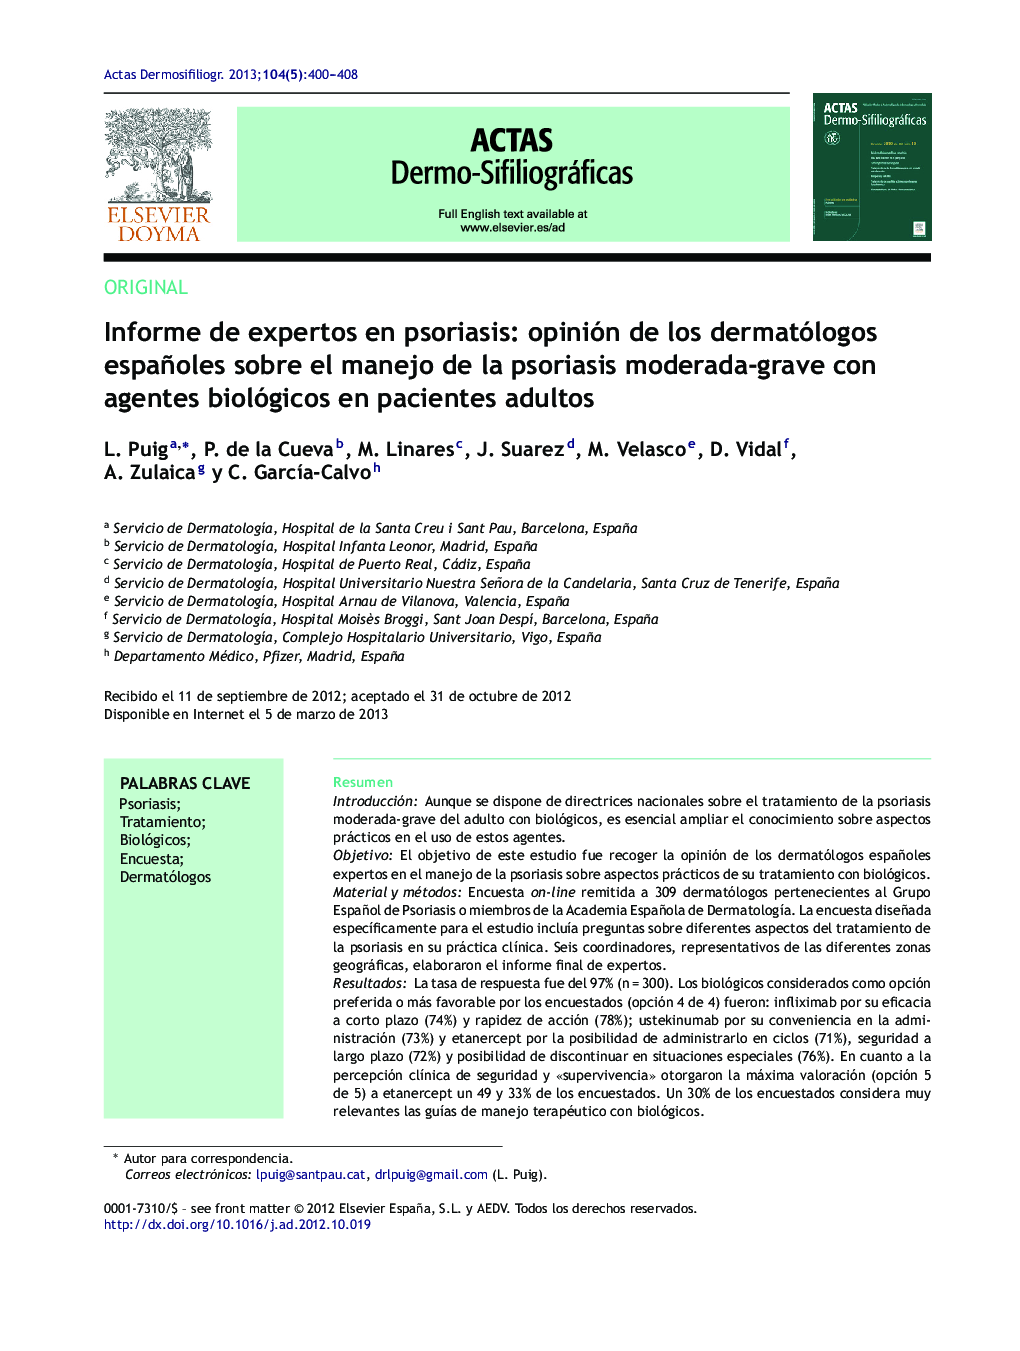 Informe de expertos en psoriasis: opinión de los dermatólogos españoles sobre el manejo de la psoriasis moderada-grave con agentes biológicos en pacientes adultos